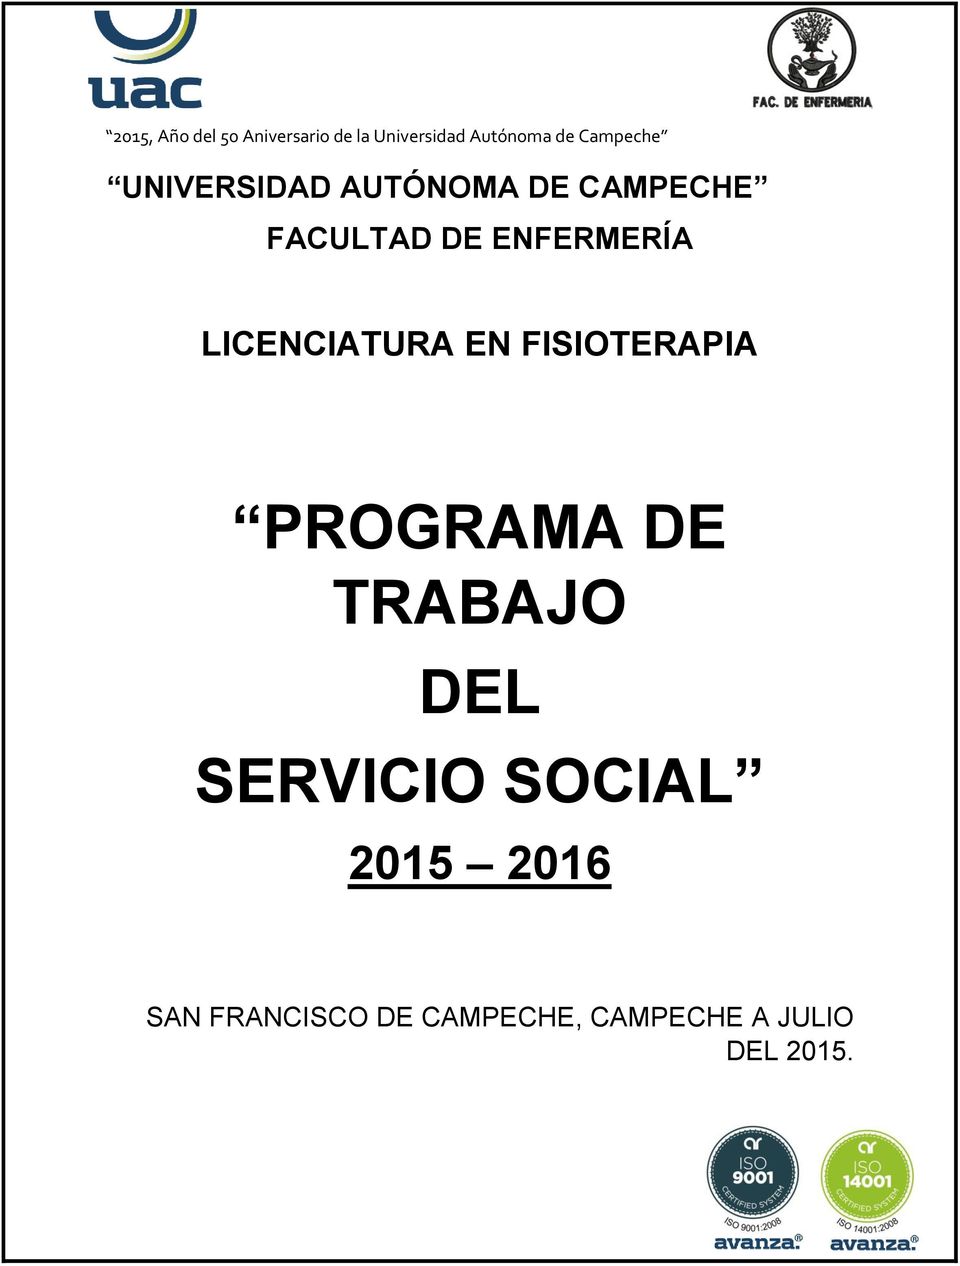 PROGRAMA DE TRABAJO DEL SERVICIO SOCIAL 2015